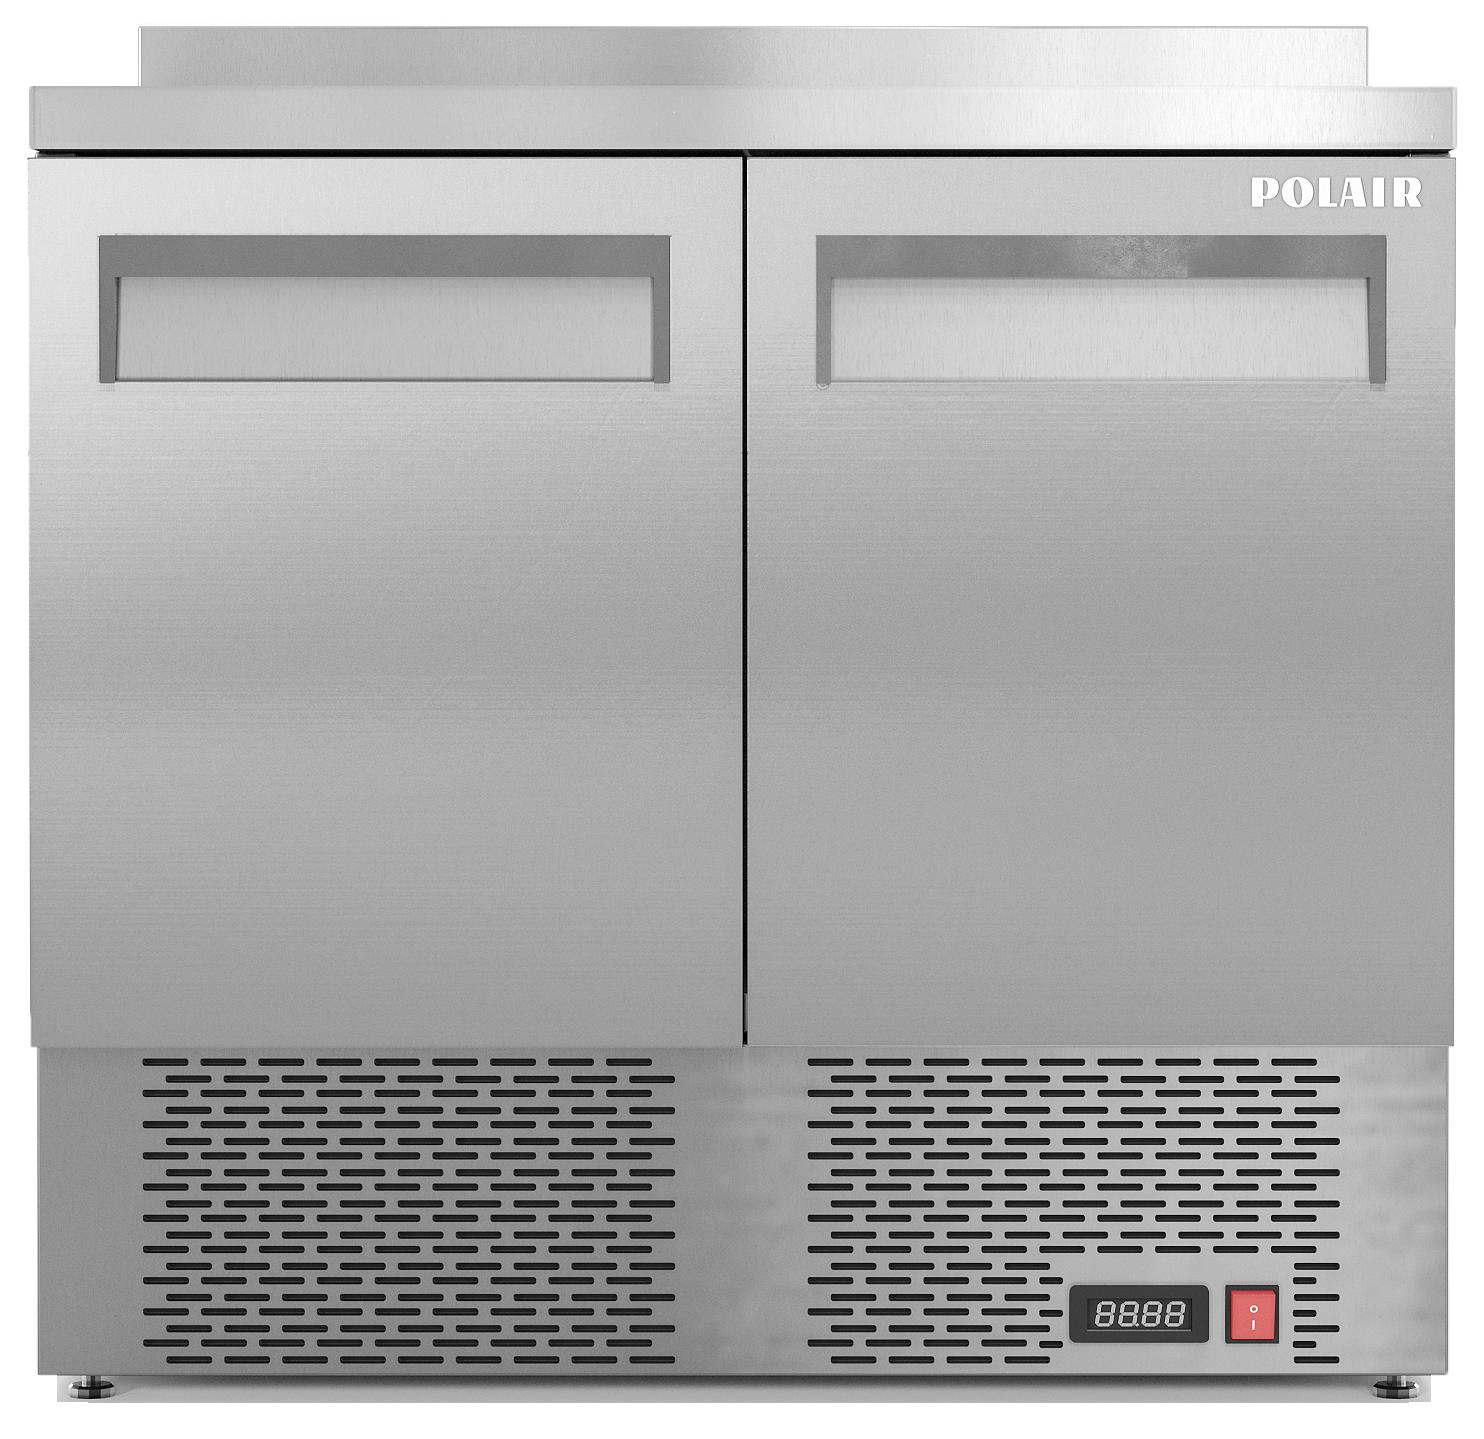 Стол холодильный среднетемпературный TMi2-GC (R290)